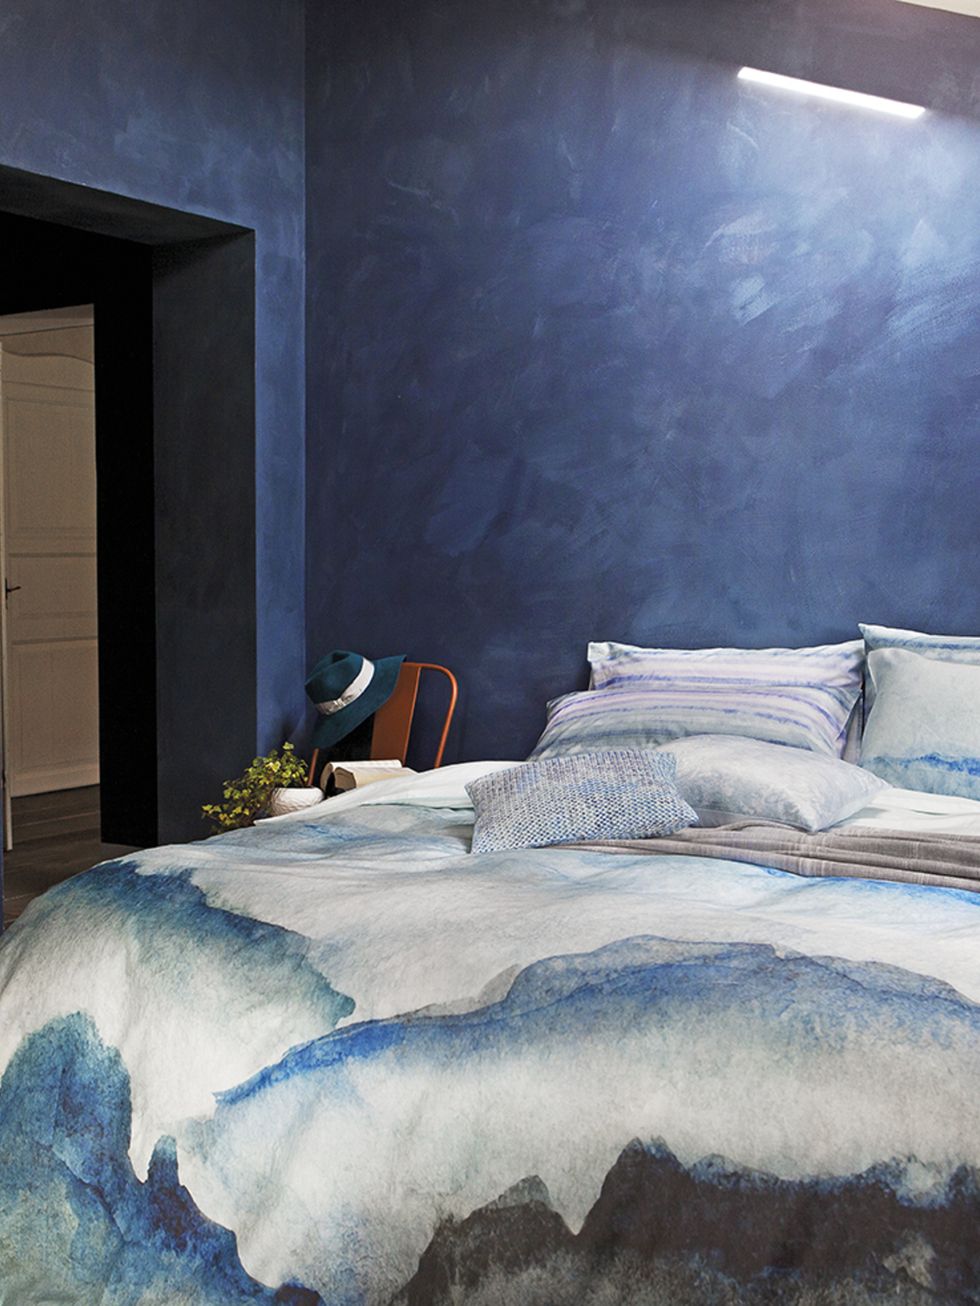 Bed, Blue, Room, Lighting, Property, Bedding, Interior design, Bedroom, Textile, Bed sheet, 